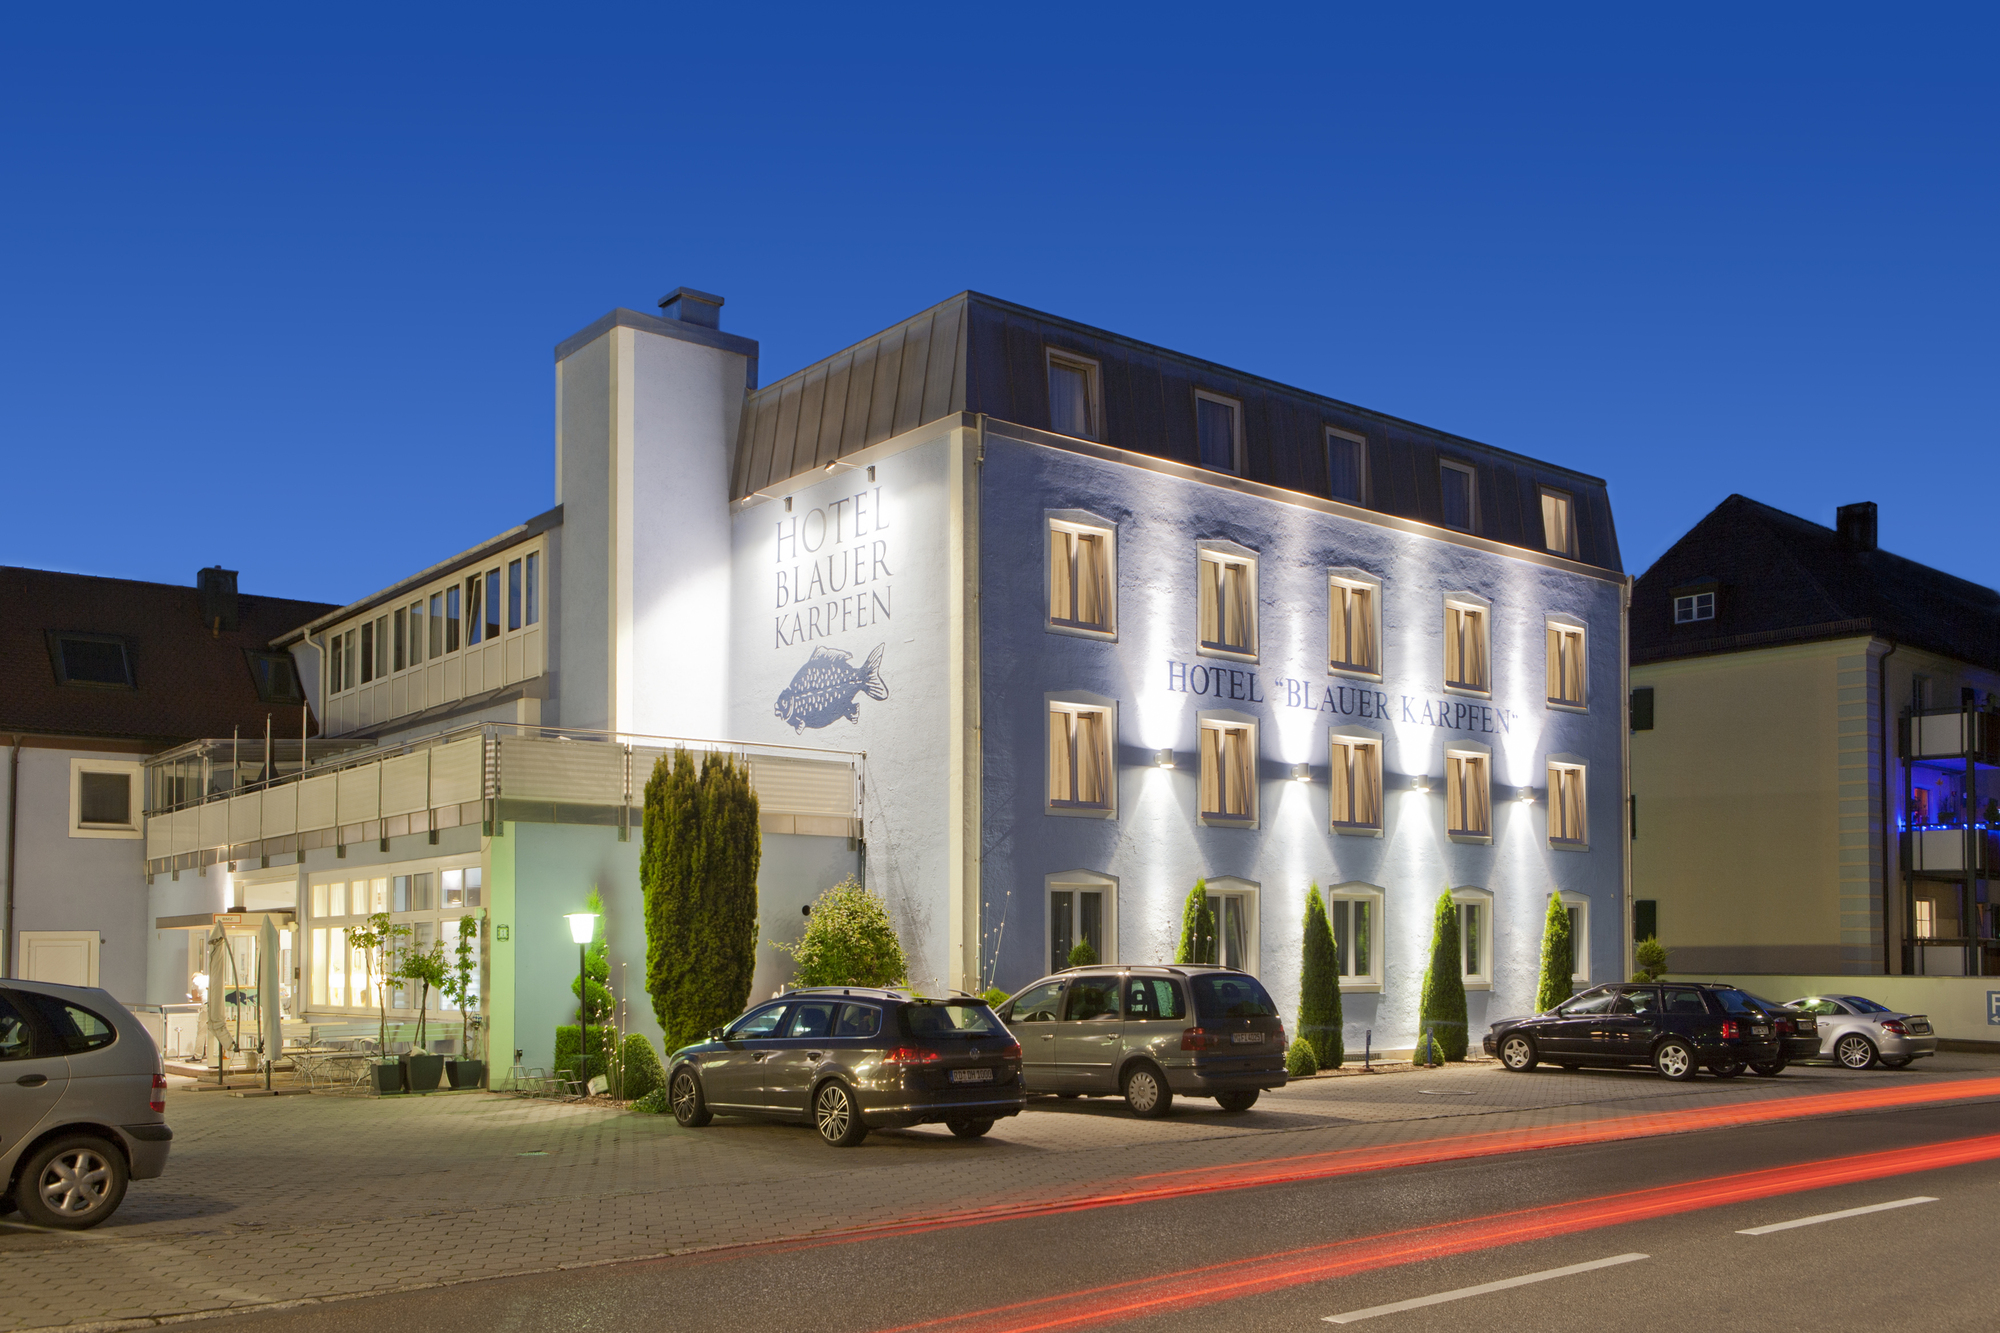 Business Hotel blauer Karpfen, Oberschleißheim bei München